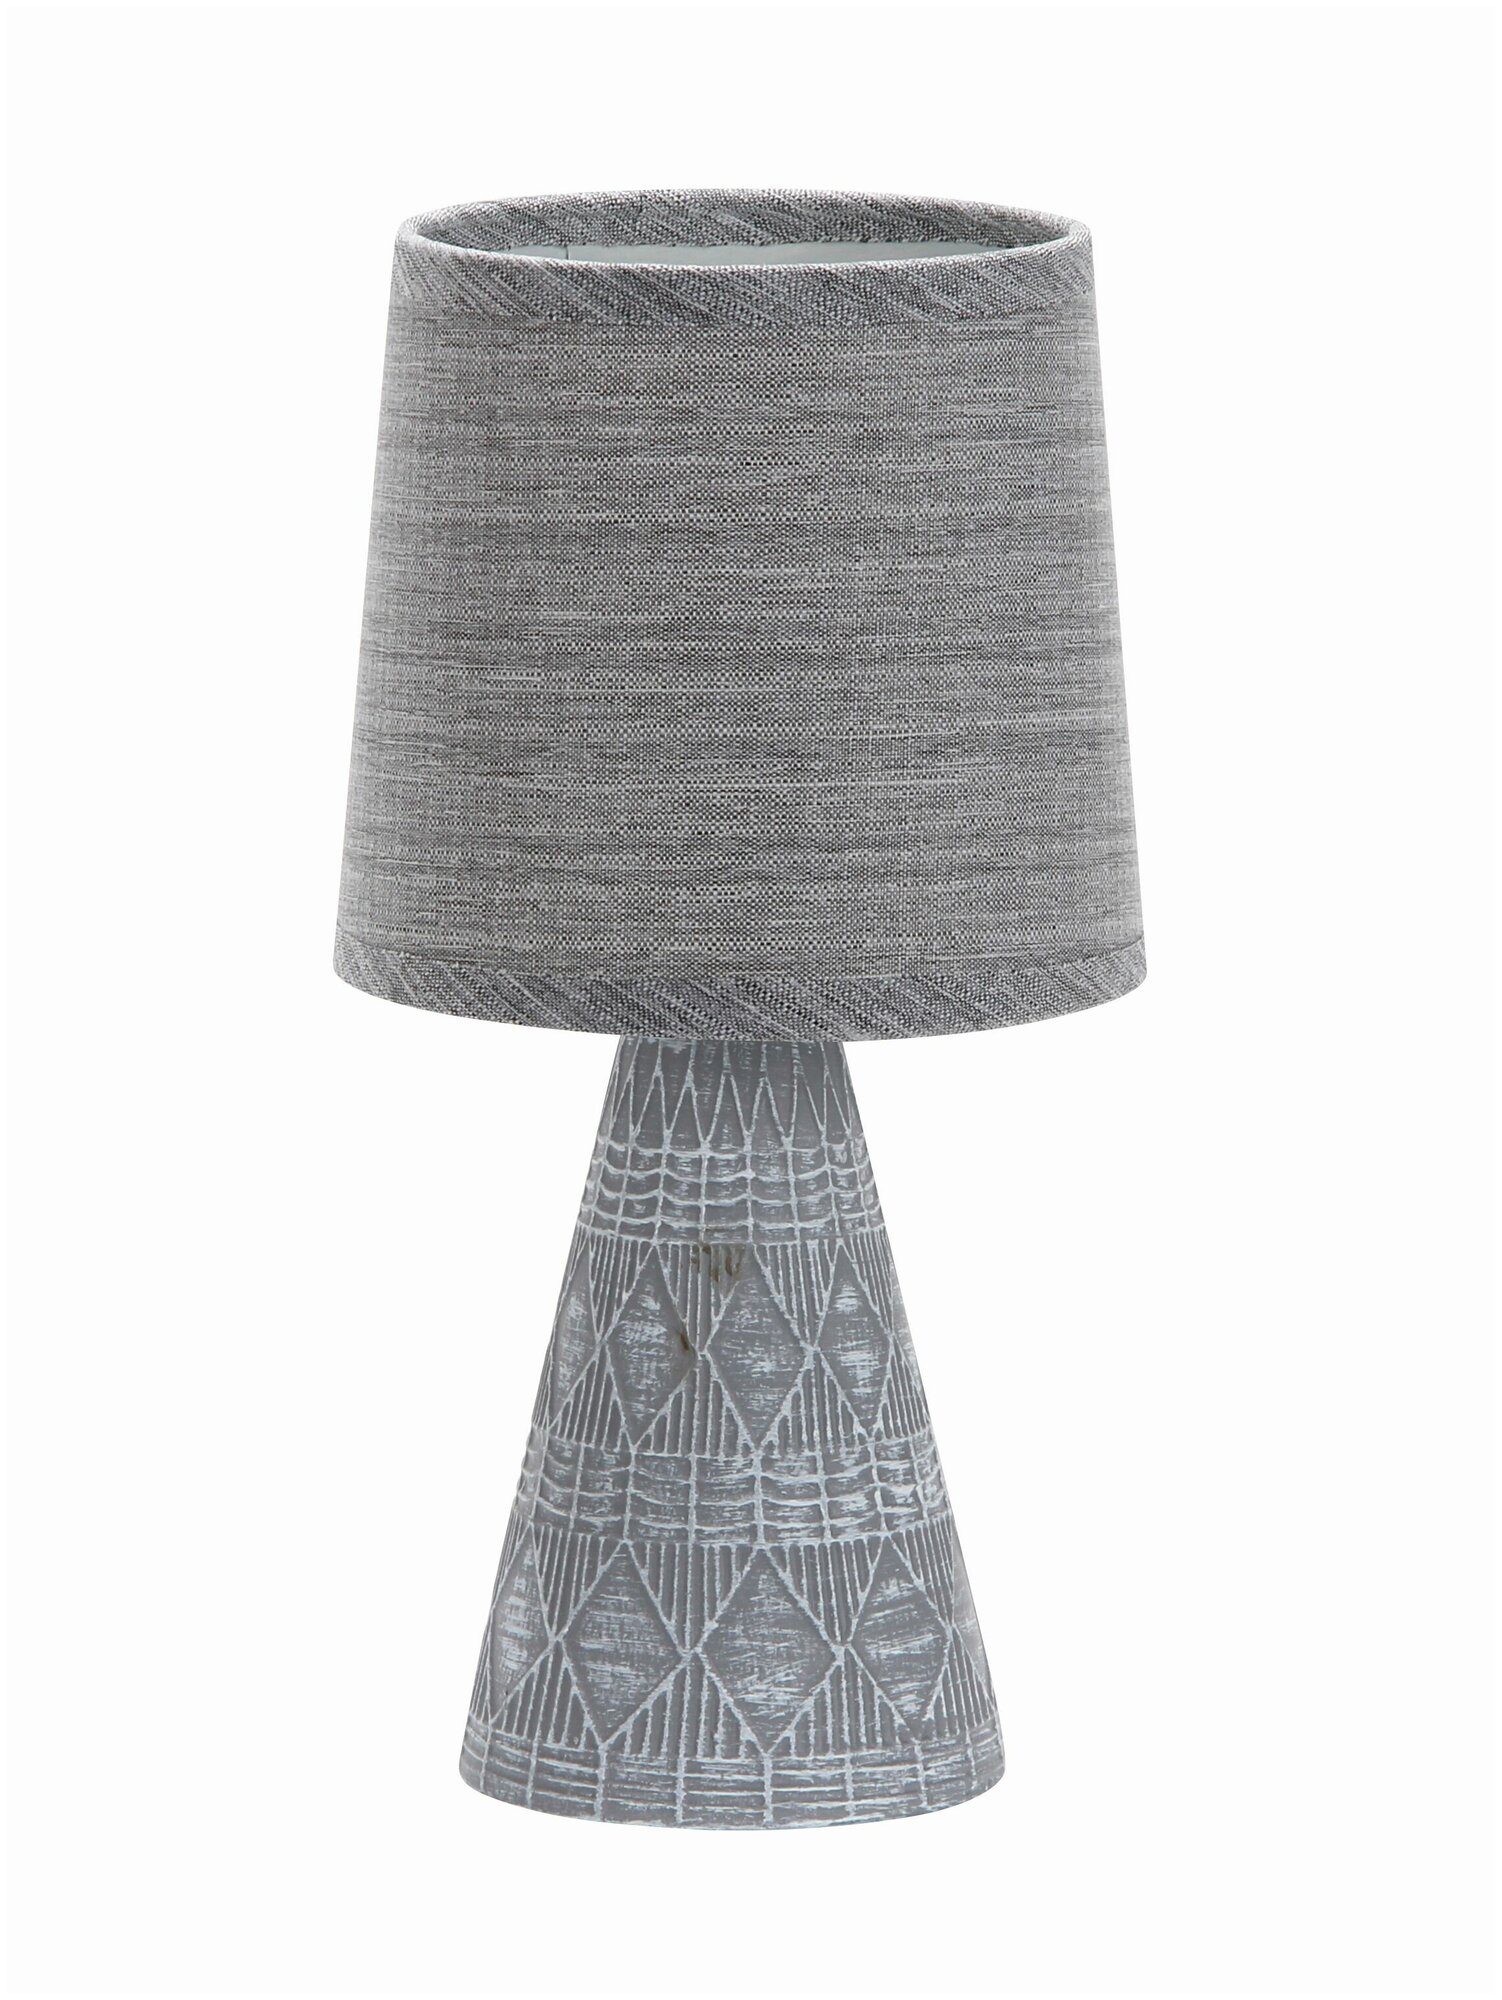 Настольная лампа Escada Melody 10164/L Grey, E14, кол-во ламп:1шт, Серый